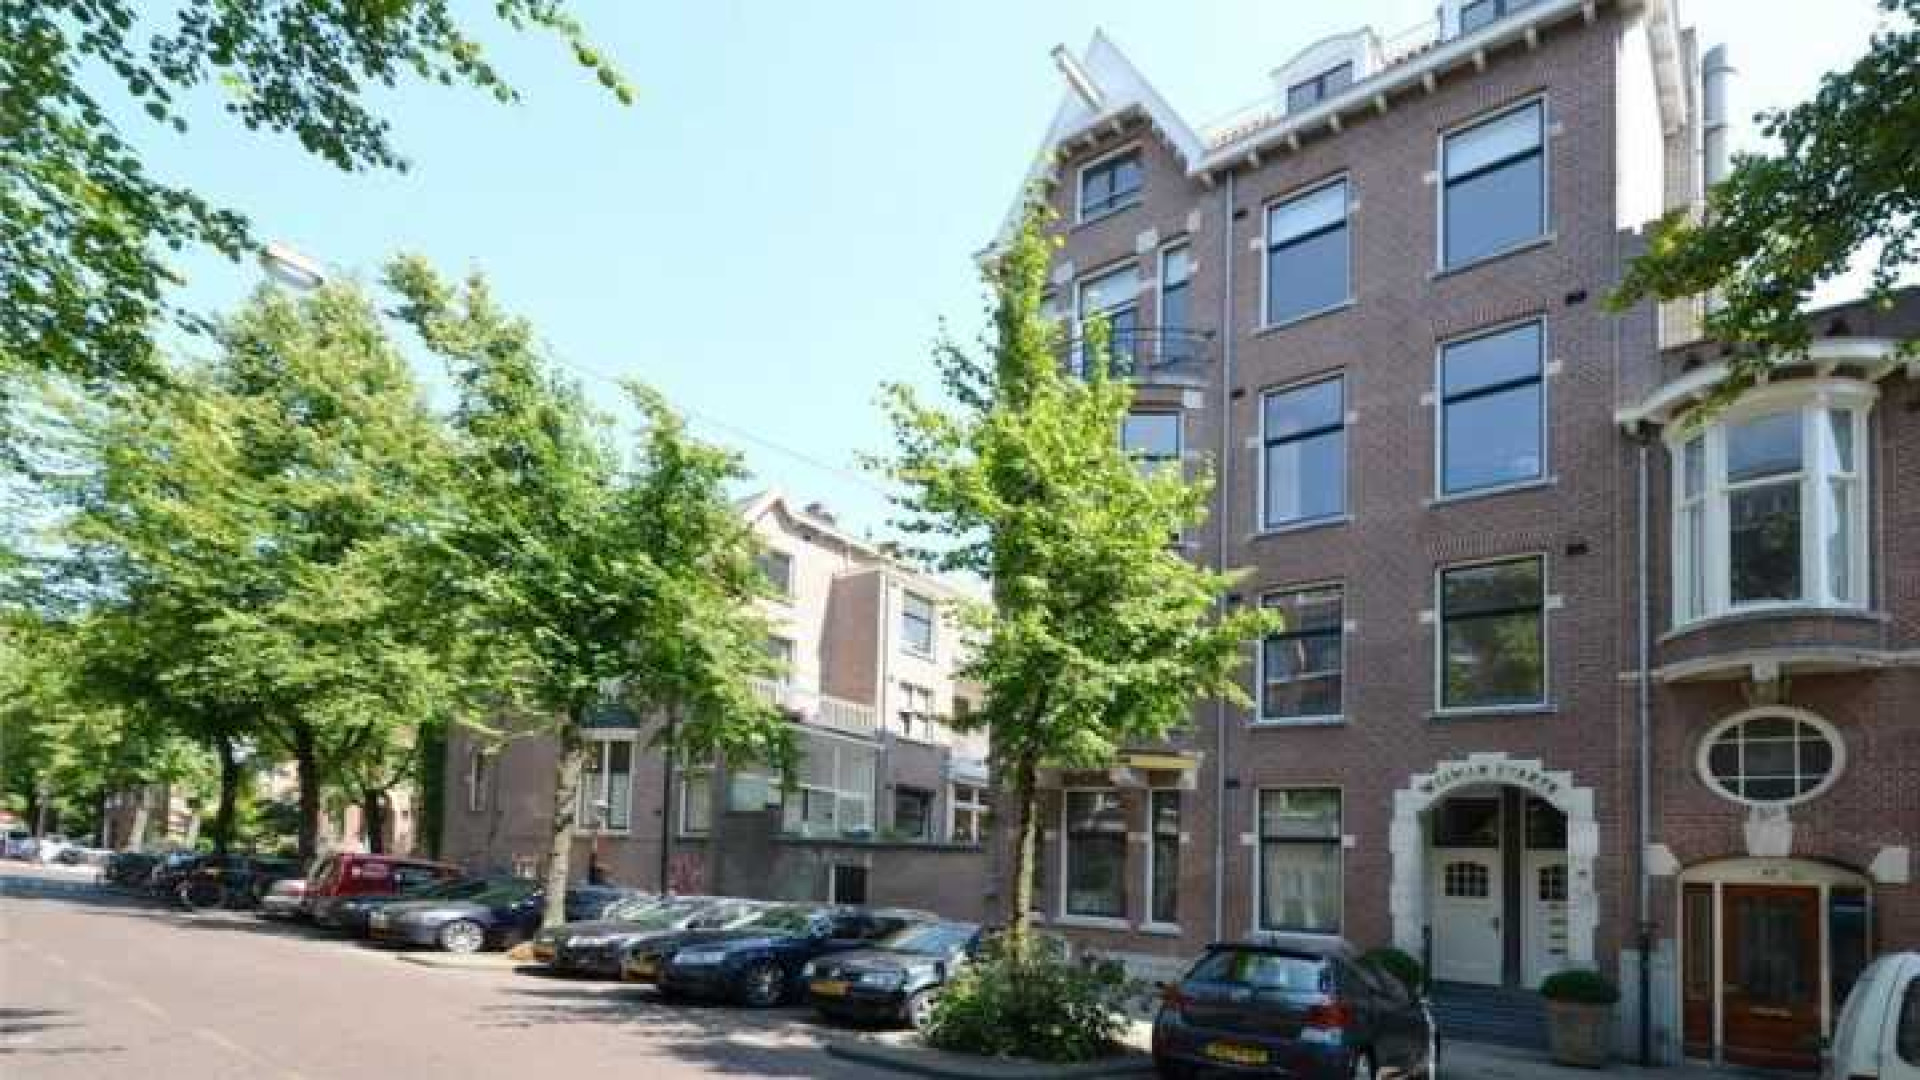 Frank Rijkaard zoekt huurder voor zijn luxe dubbele bovenhuis. Zie foto's 34